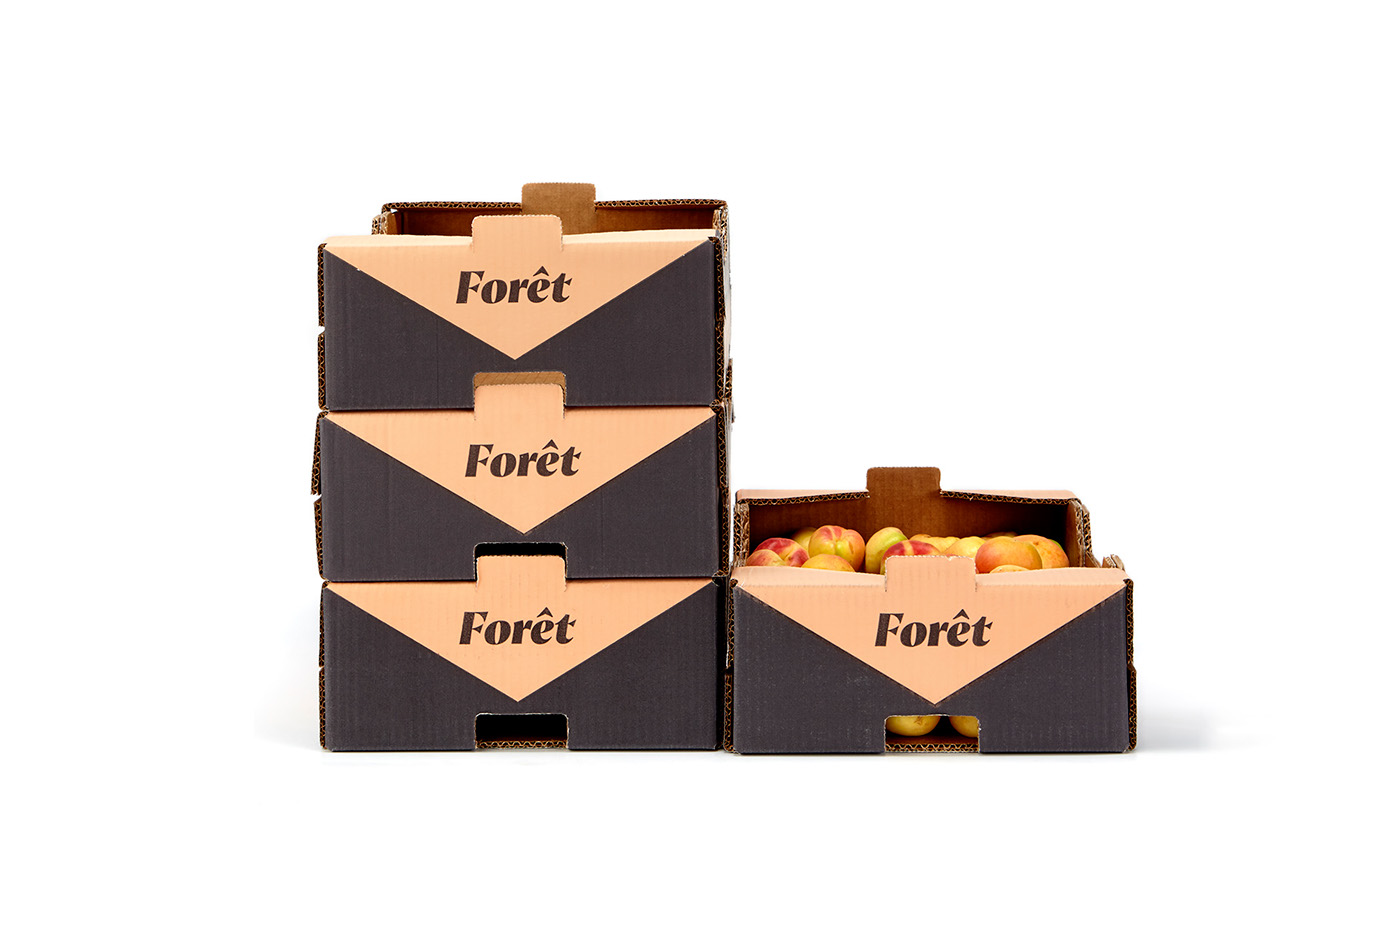 naming Fruit Pack packaging fruit box cardboar box design Logotype fruit branding Van